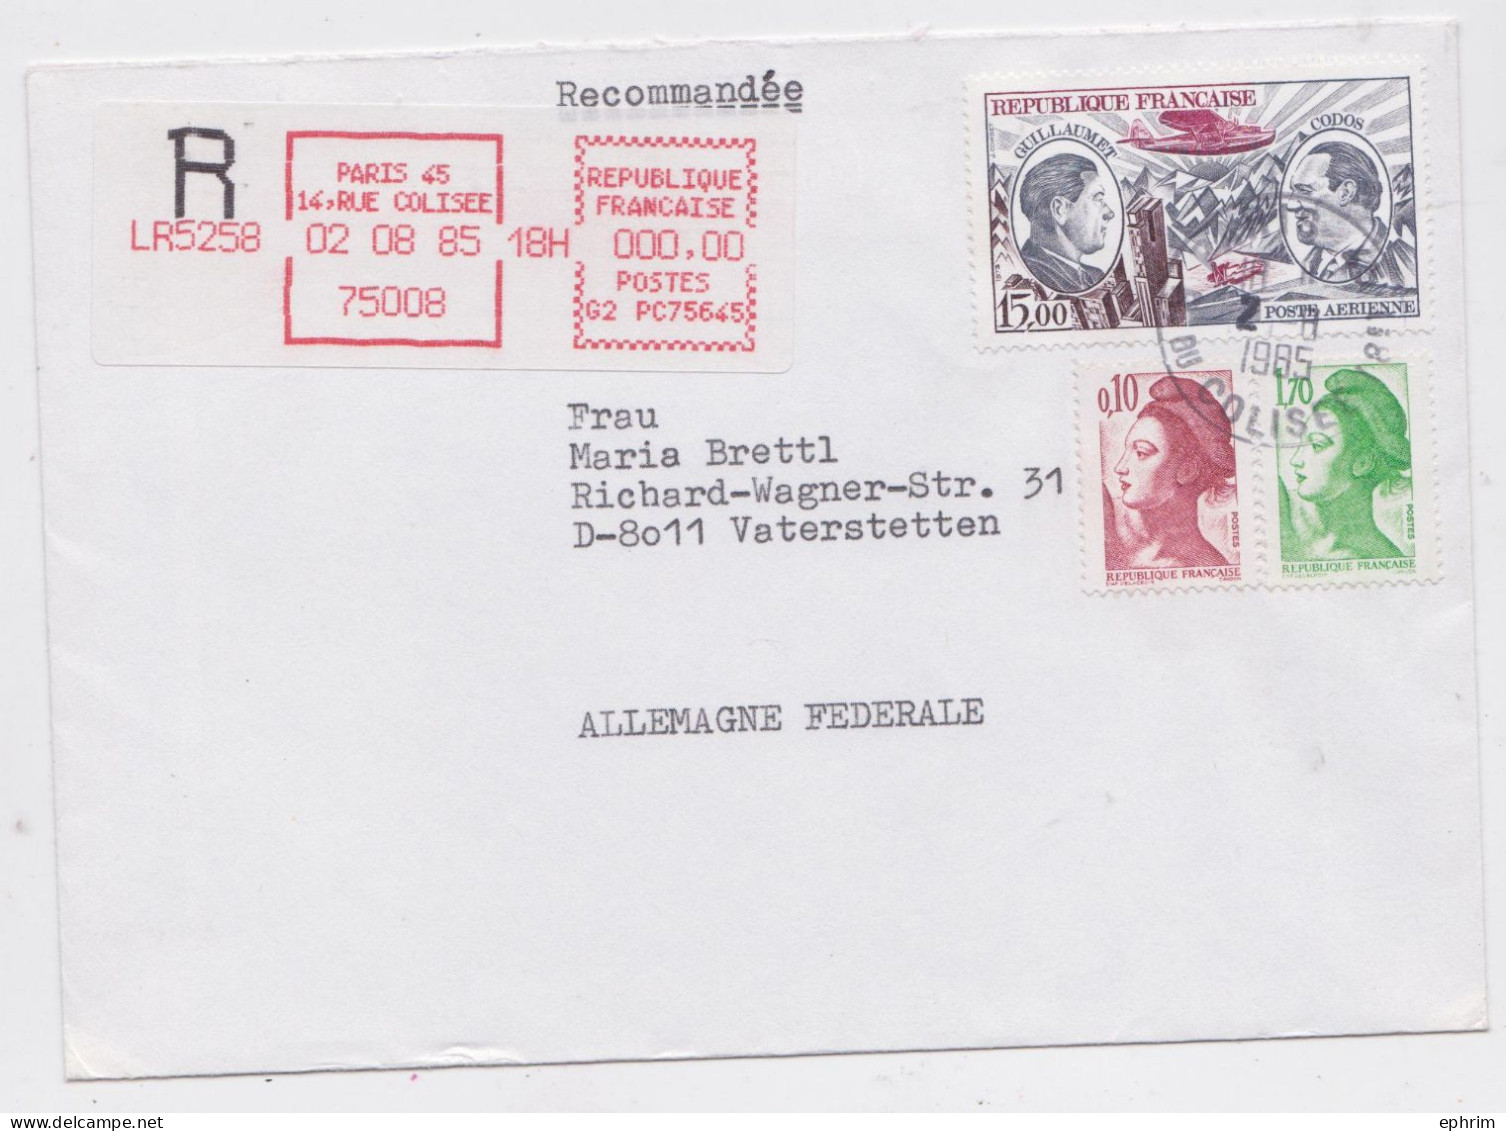 France Paris Lettre Vignette Recommandée Rouge Timbre Poste Aérienne Registered Label Air Mail Cover Vaterstetten 1985 - Brieven En Documenten